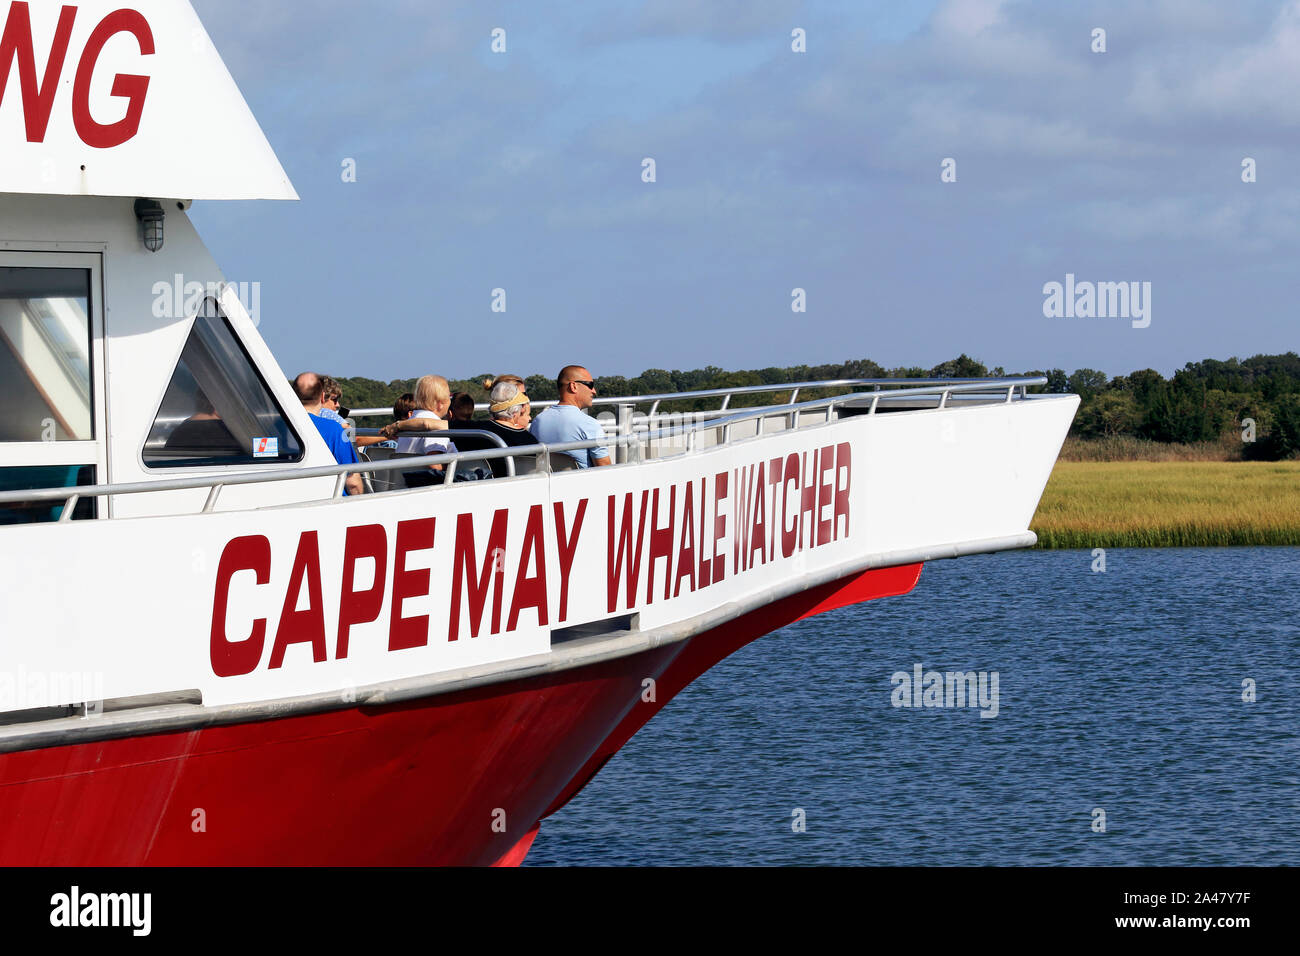 Un bateau de la flotte de Whale Watcher du Cap May. Une visite touristique populaire au Cap May, New Jersey, États-Unis Banque D'Images